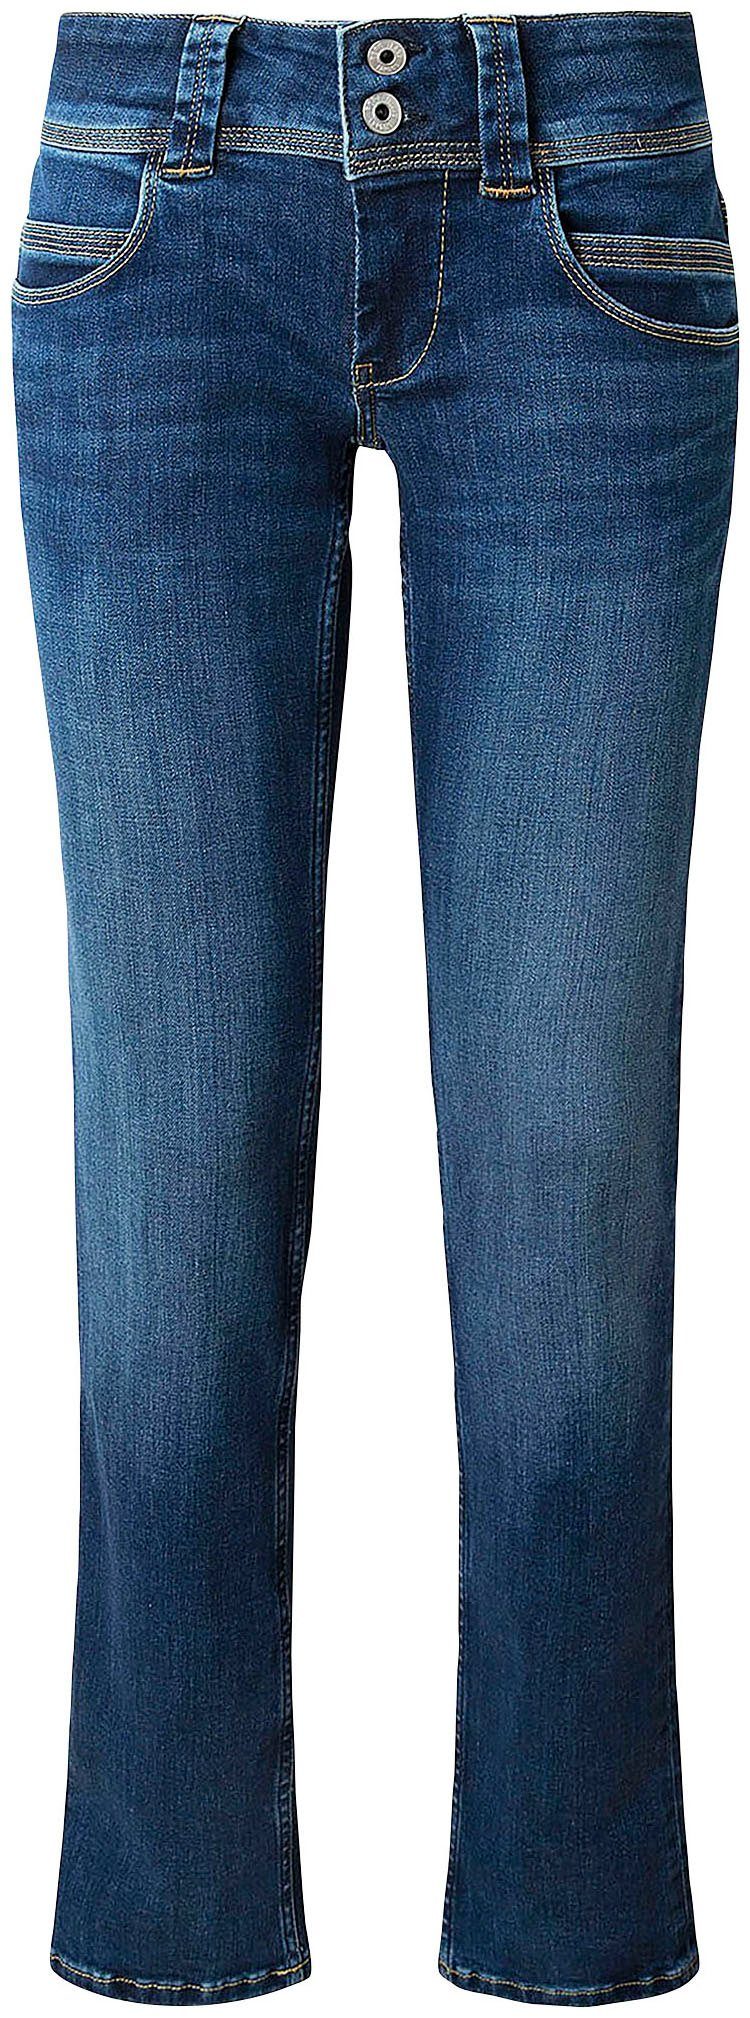 blau-ausgewaschen Regular-fit-Jeans mit Pepe VENUS Jeans Badge